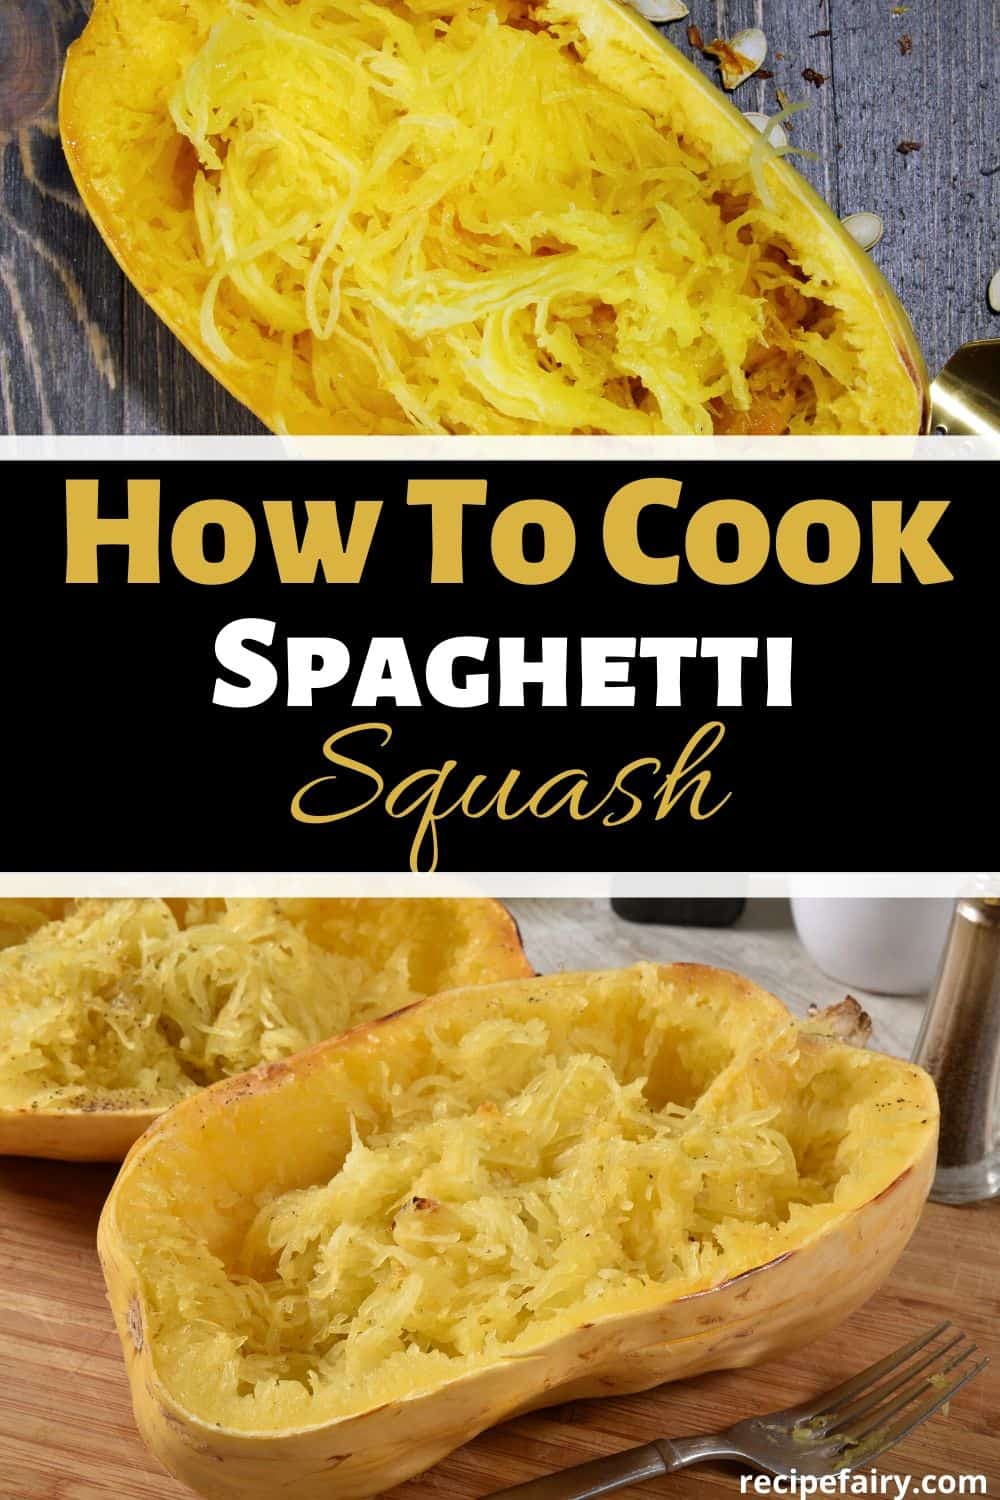 How to Cook Spaghetti Squash (Plus Recipe) » Recipefairy.com